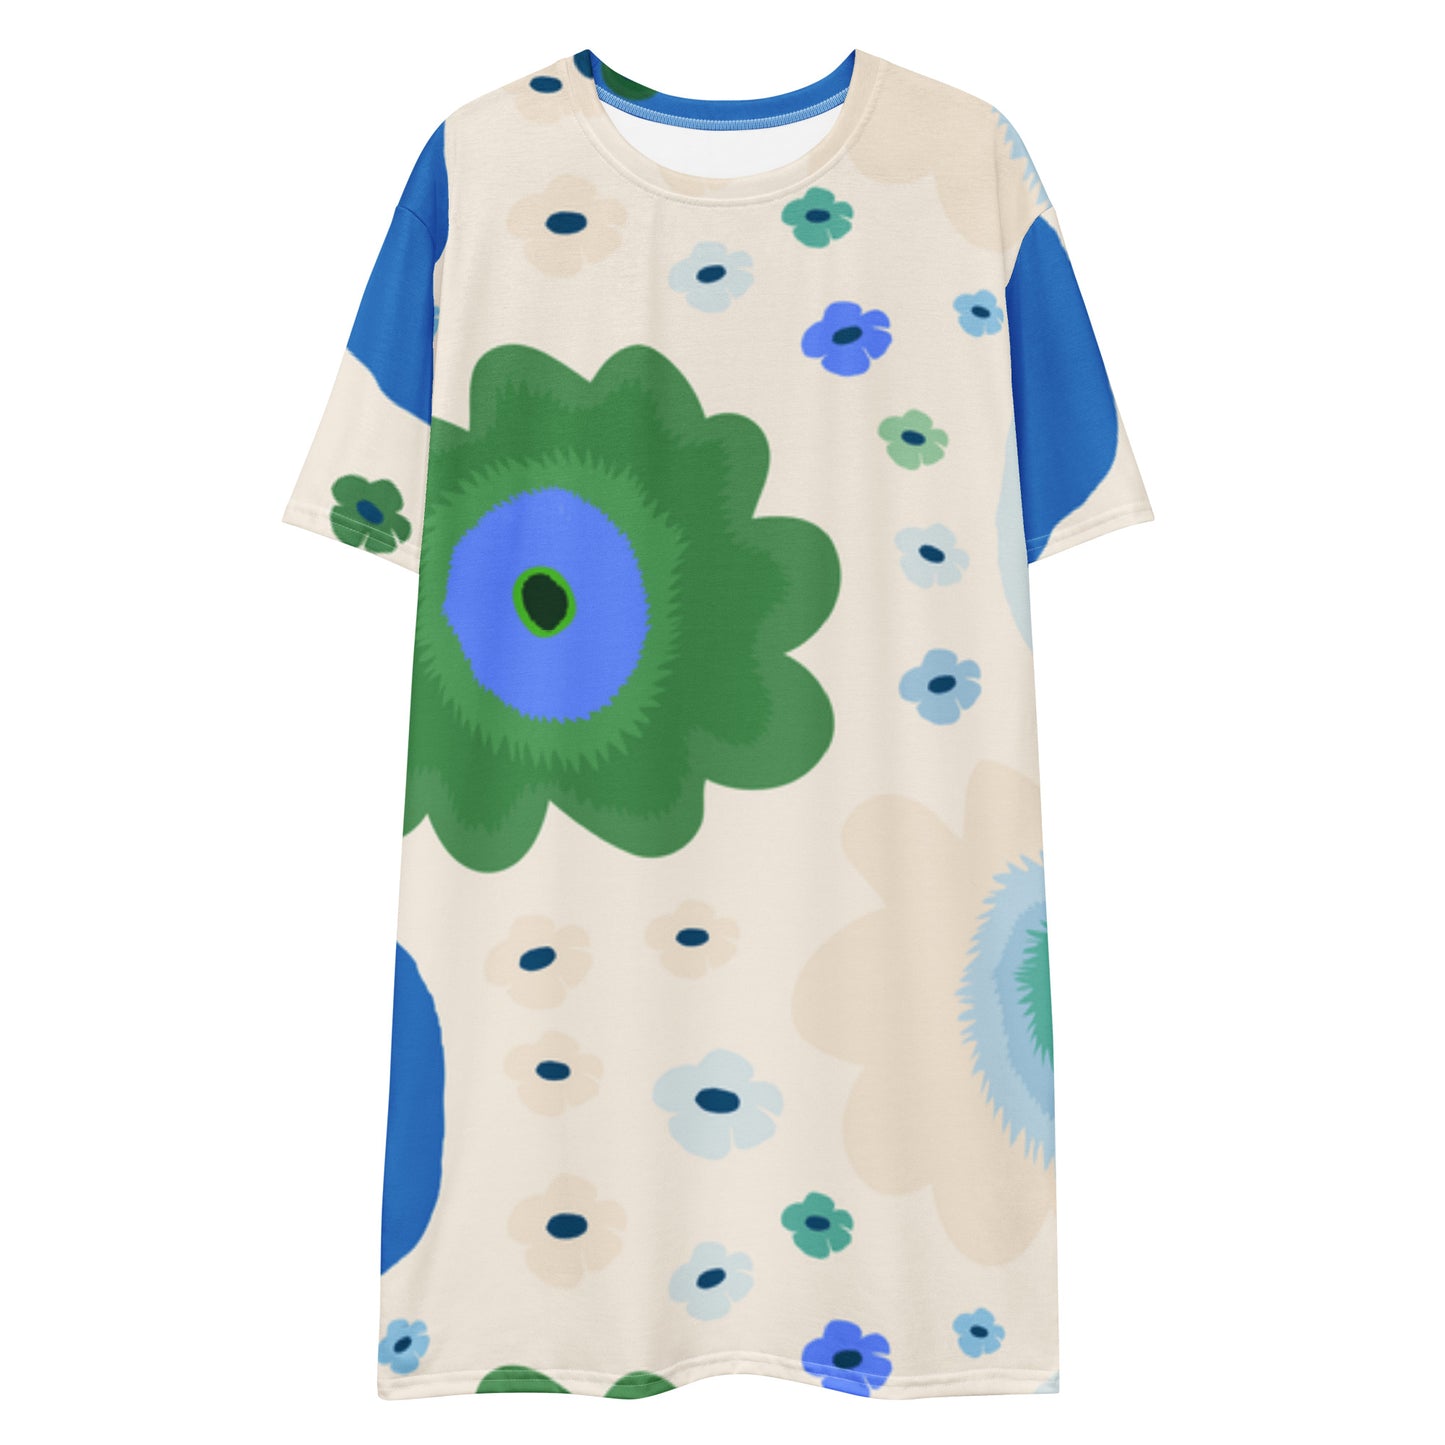 Kevät - T-shirt dress - Dresses- Print N Stuff - [designed in Turku Finland]